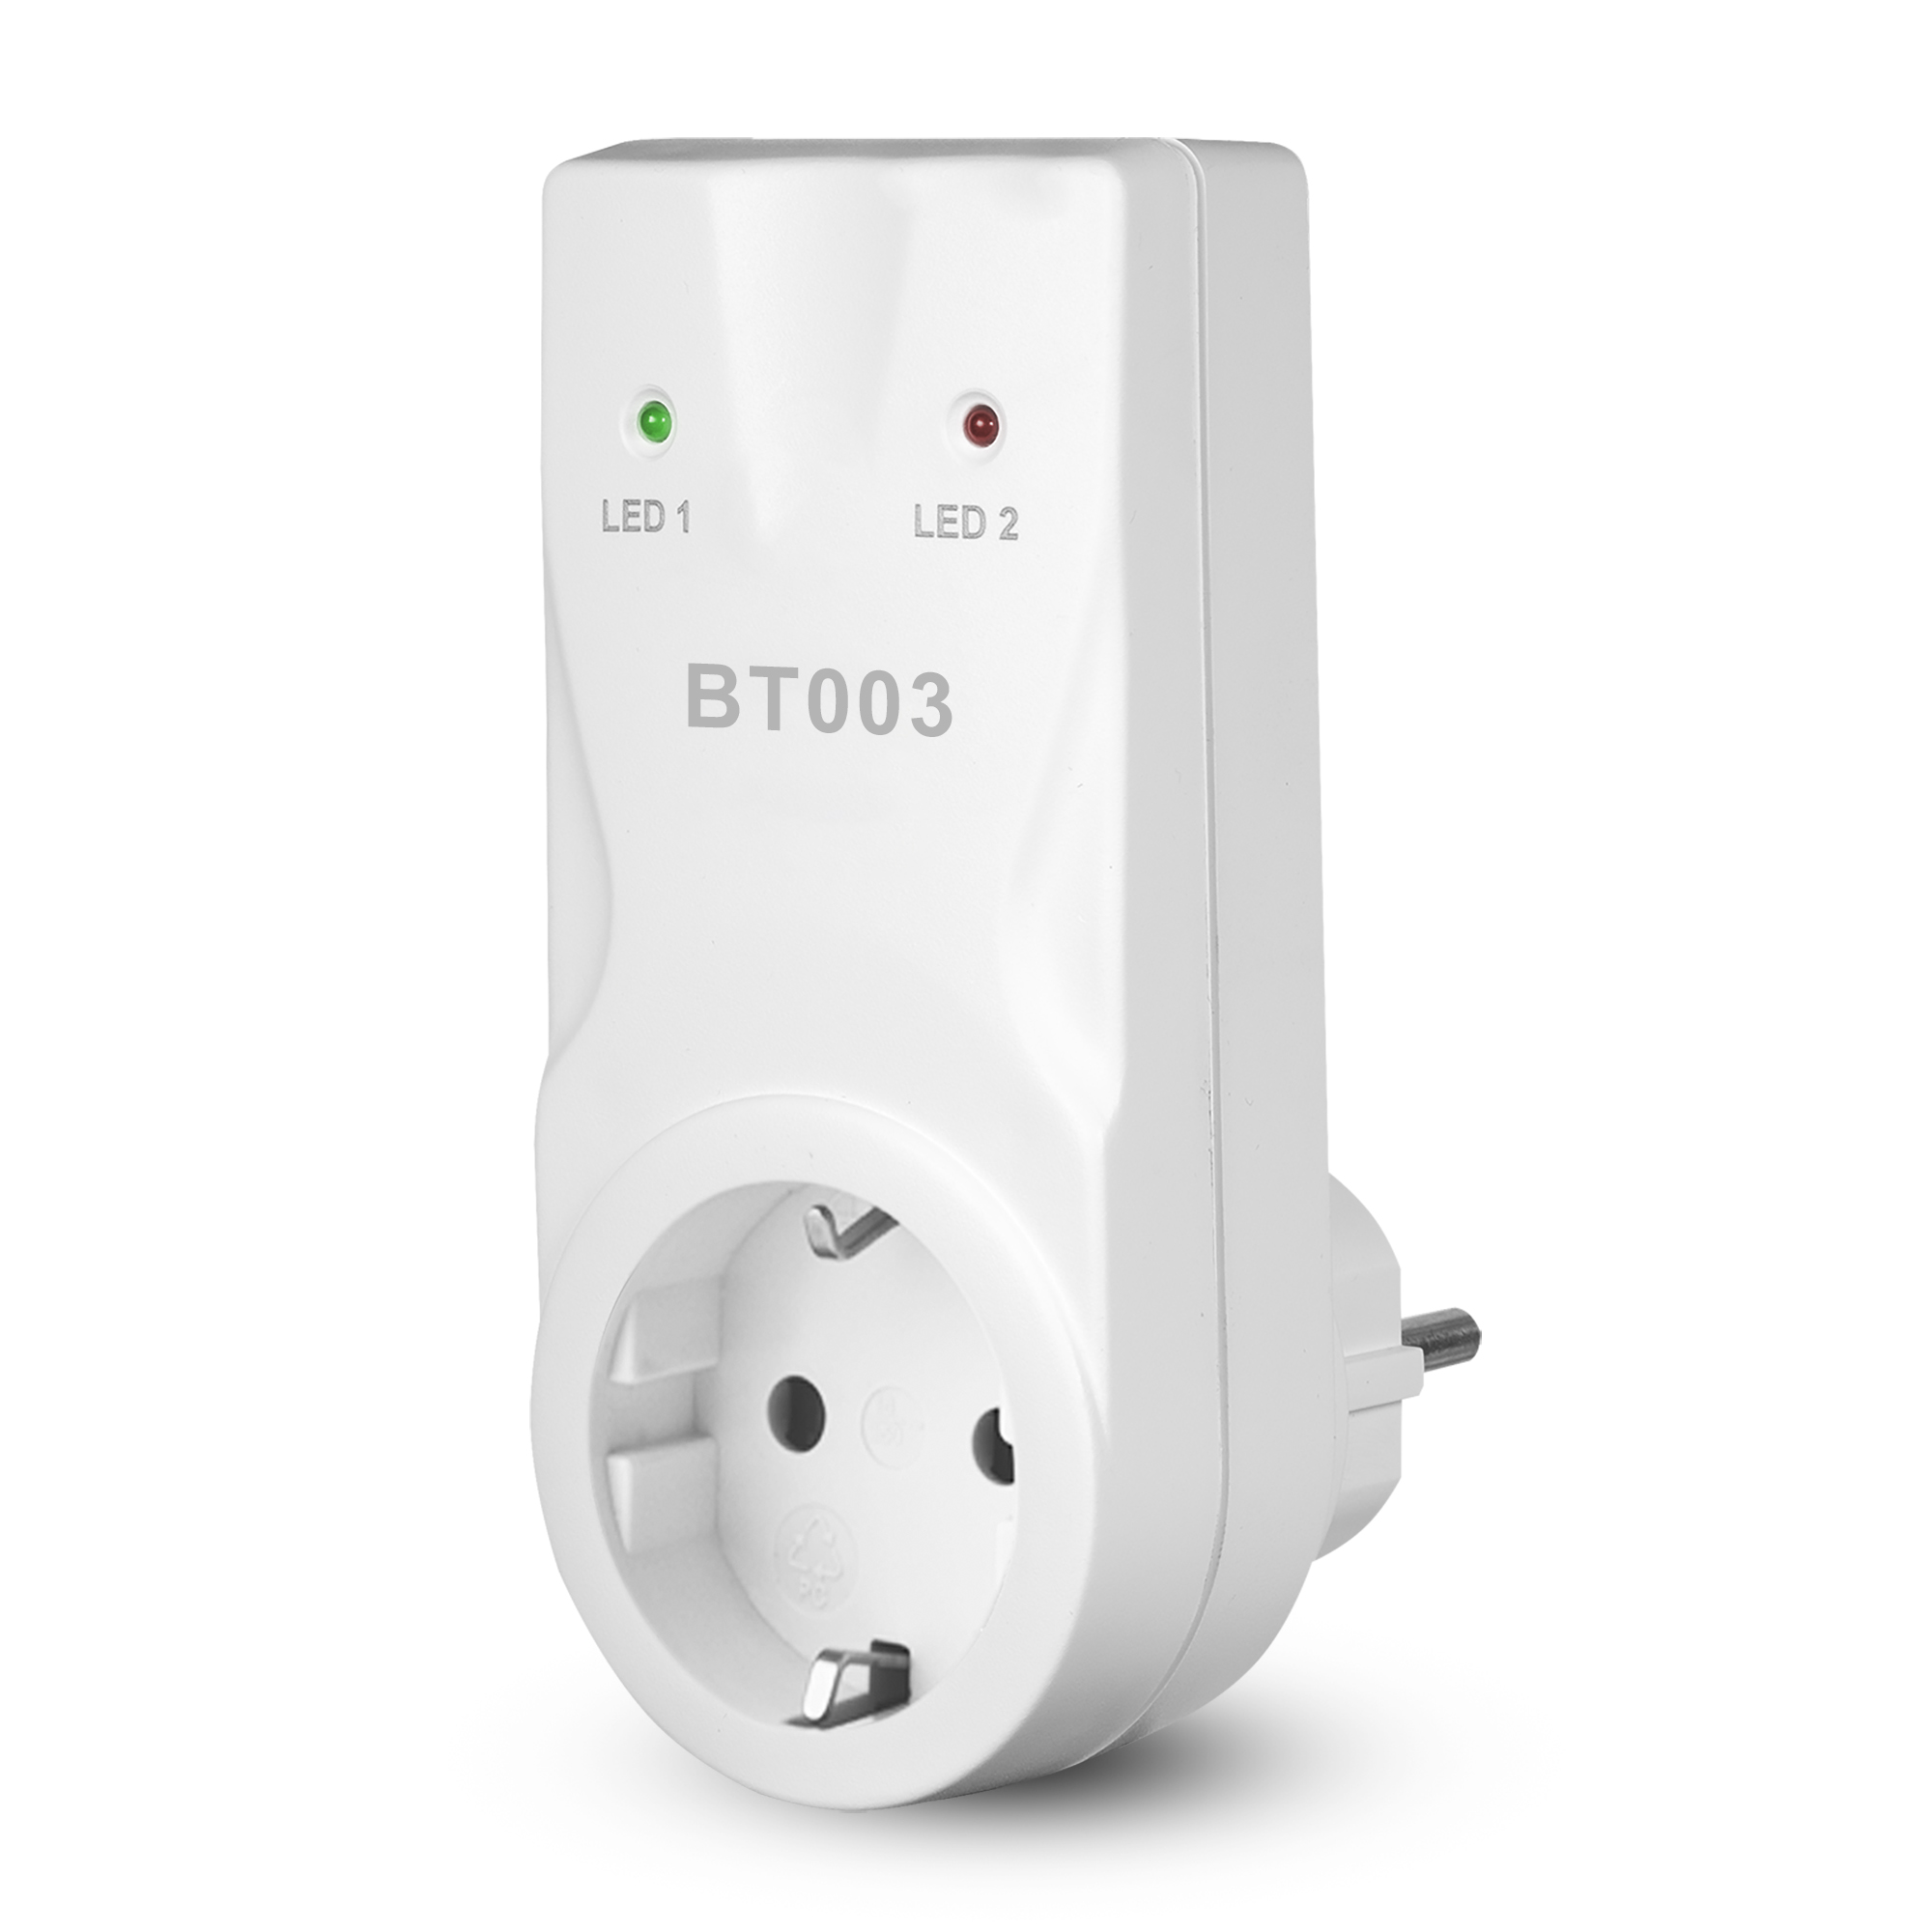 Funk-Thermostat-Empfänger für elektrische Heizkörper 'BT003' + product picture